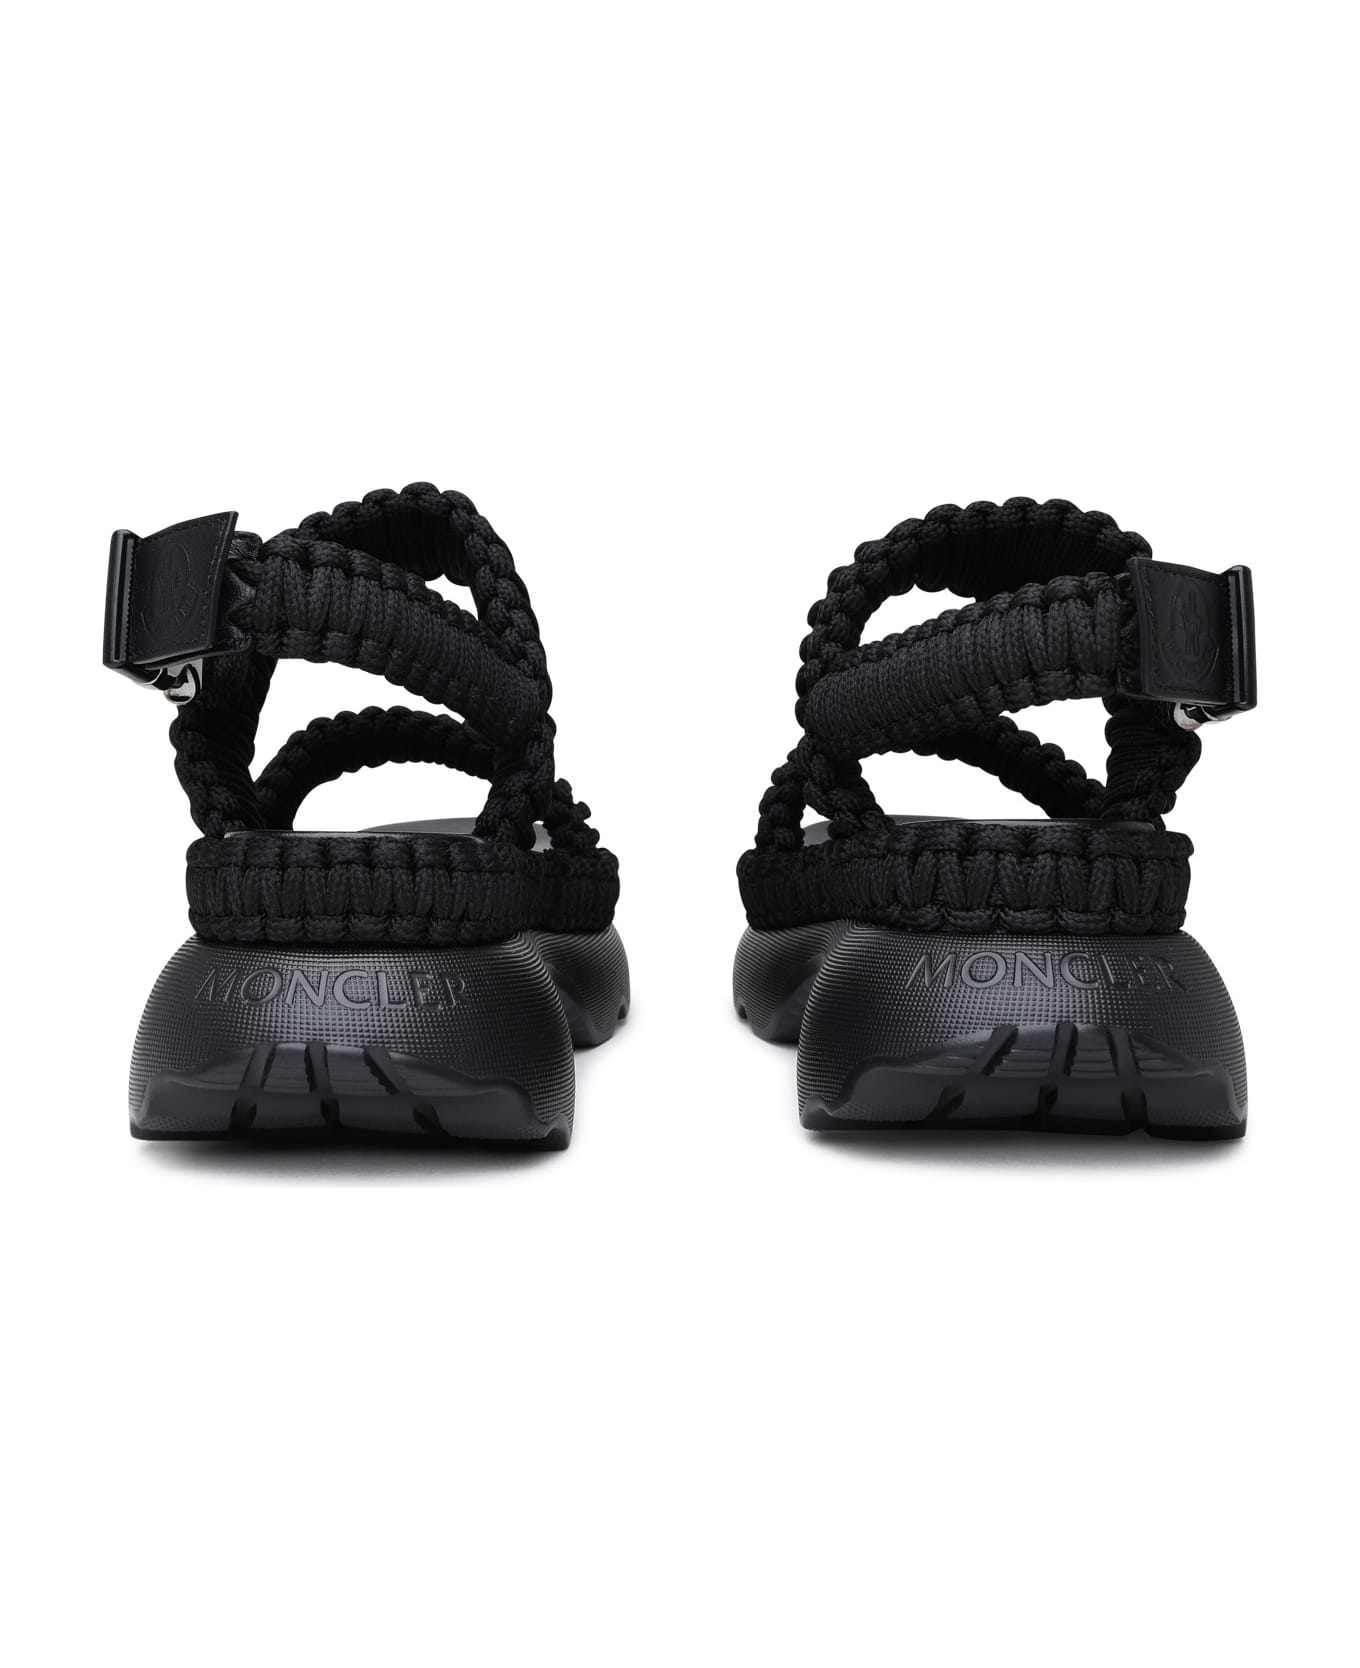 Moncler Black Polyester Beley Sandals - Black サンダル